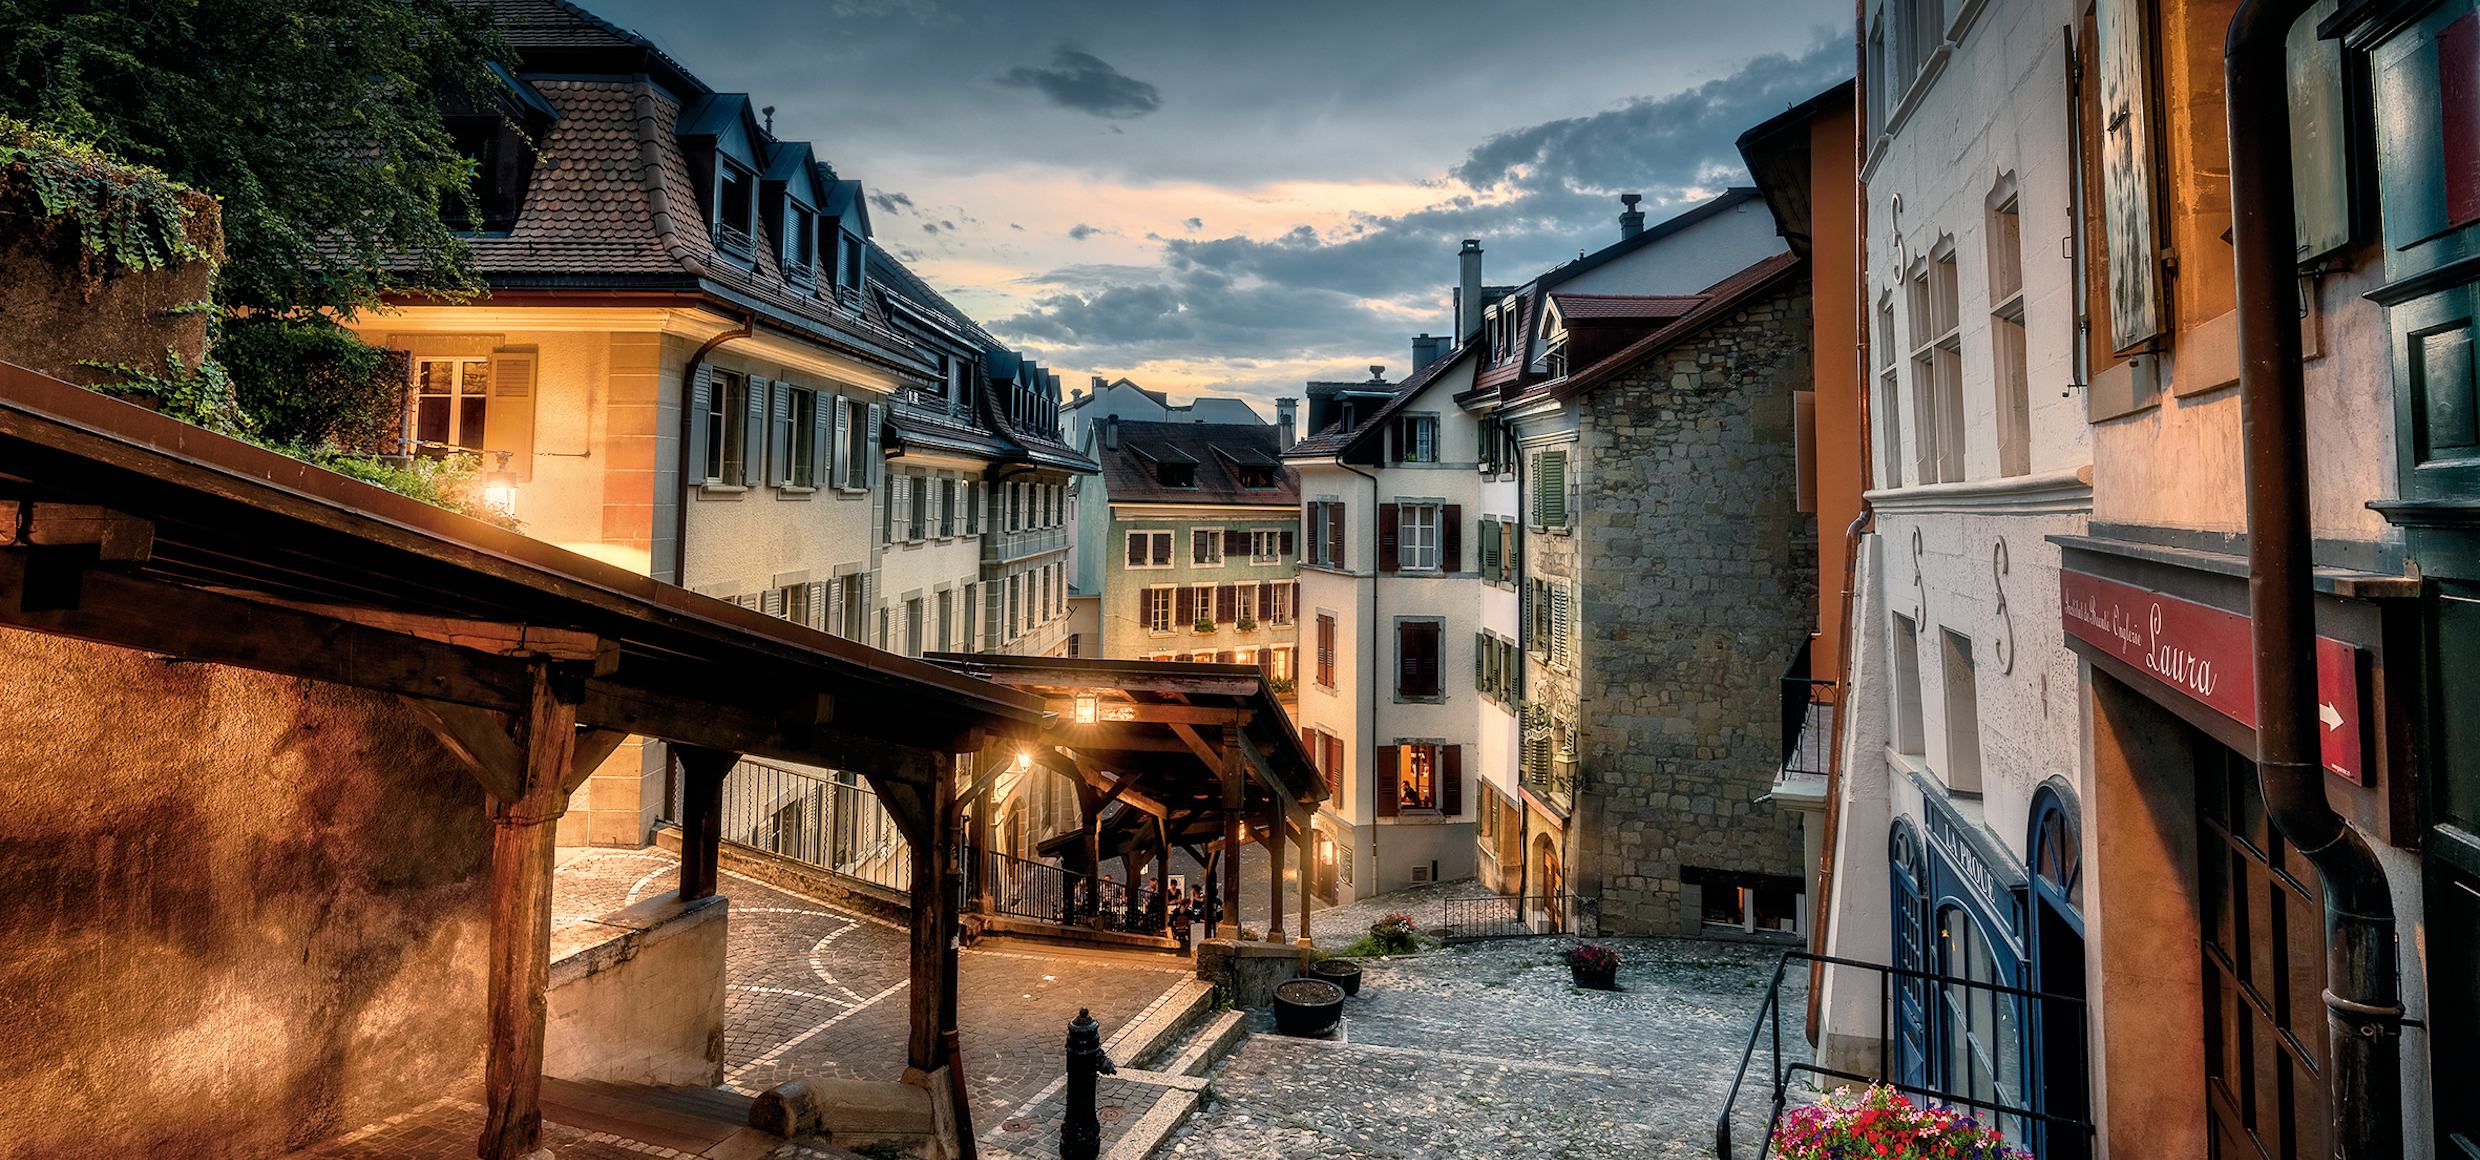 Slider 1_287_Lausanne_Escaliers du Marche_print+online_Switzerland Tourism Michael Sidofsky